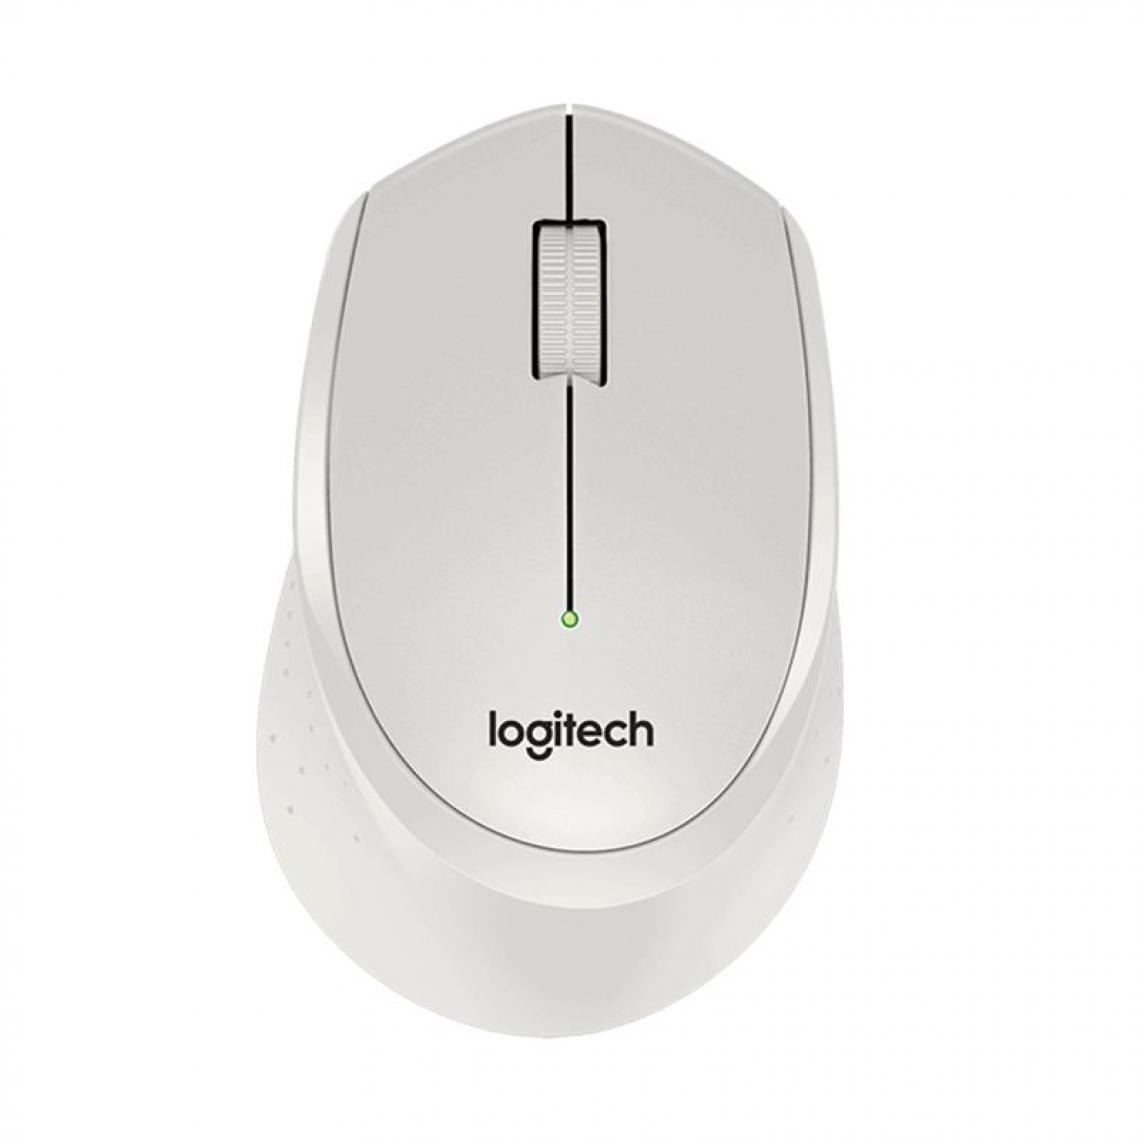 Generic - Souris optique  Logitech M330 sans fil ,silencieuse, 2.4GHz, 1000DPI  pour PC/ordinateur portable  10.5 * 0.7 * 4 cm -  Blanc  - Souris